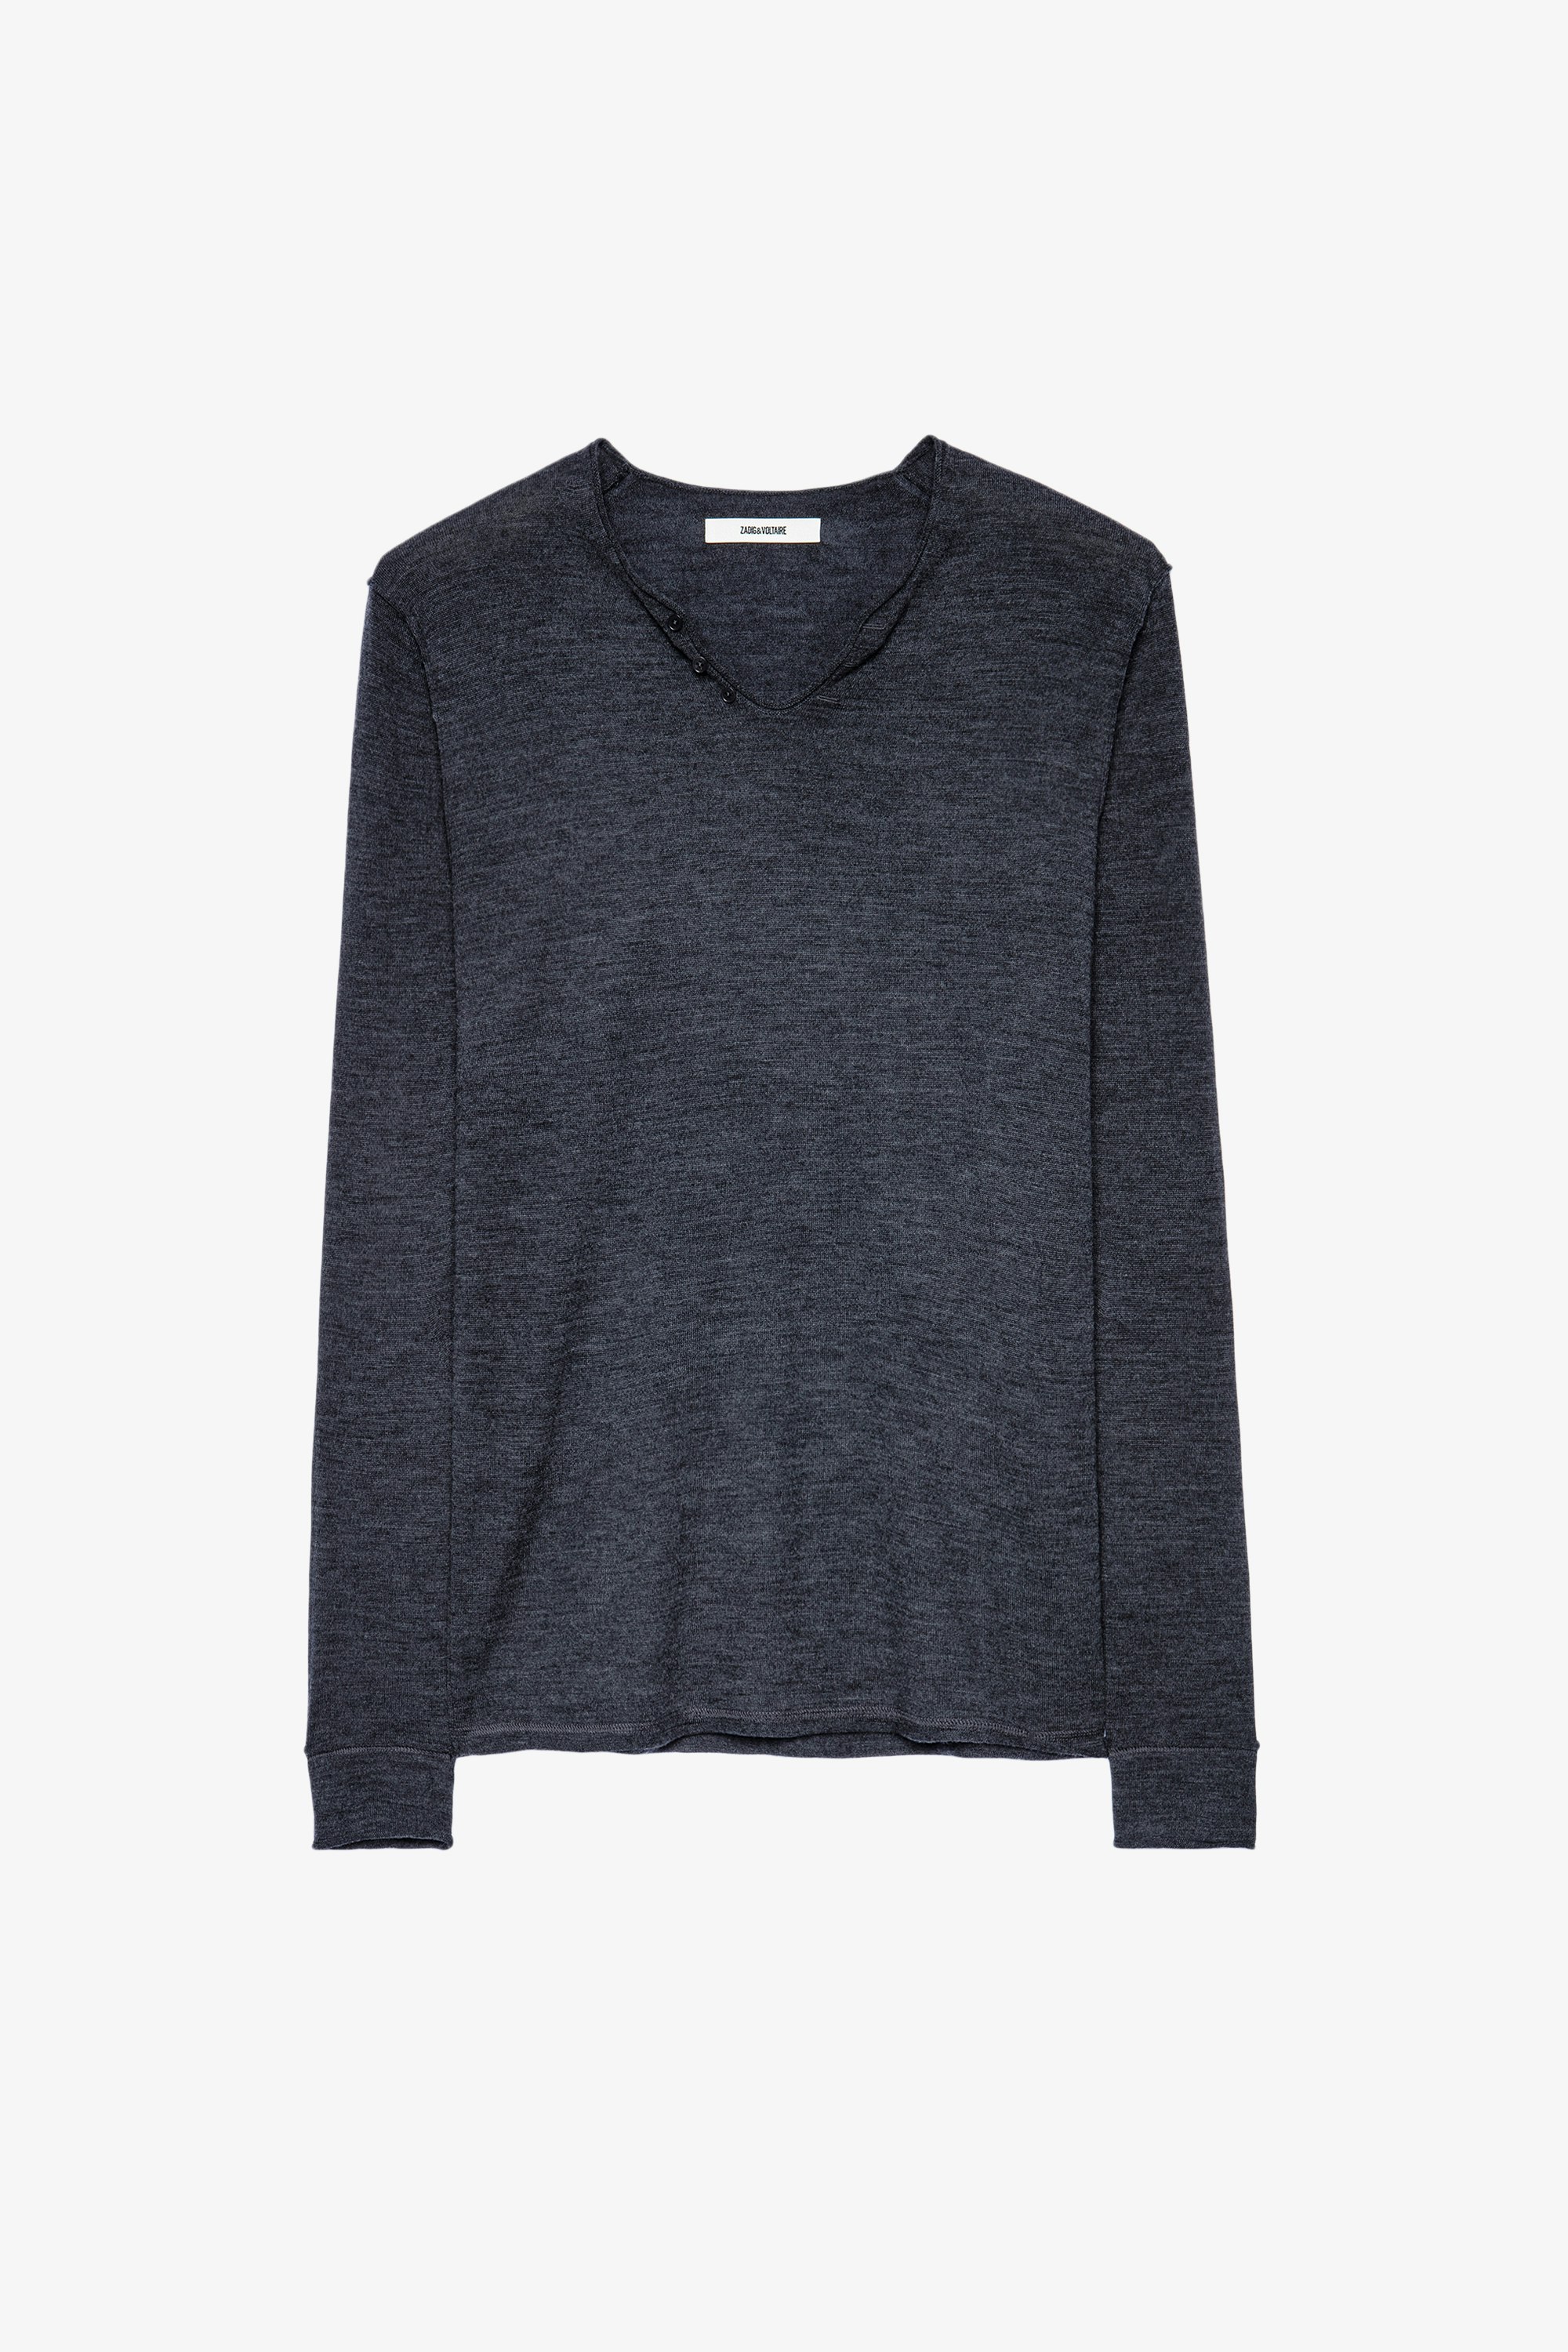 Monastir Ｔシャツ Merino wool henley grey sweater